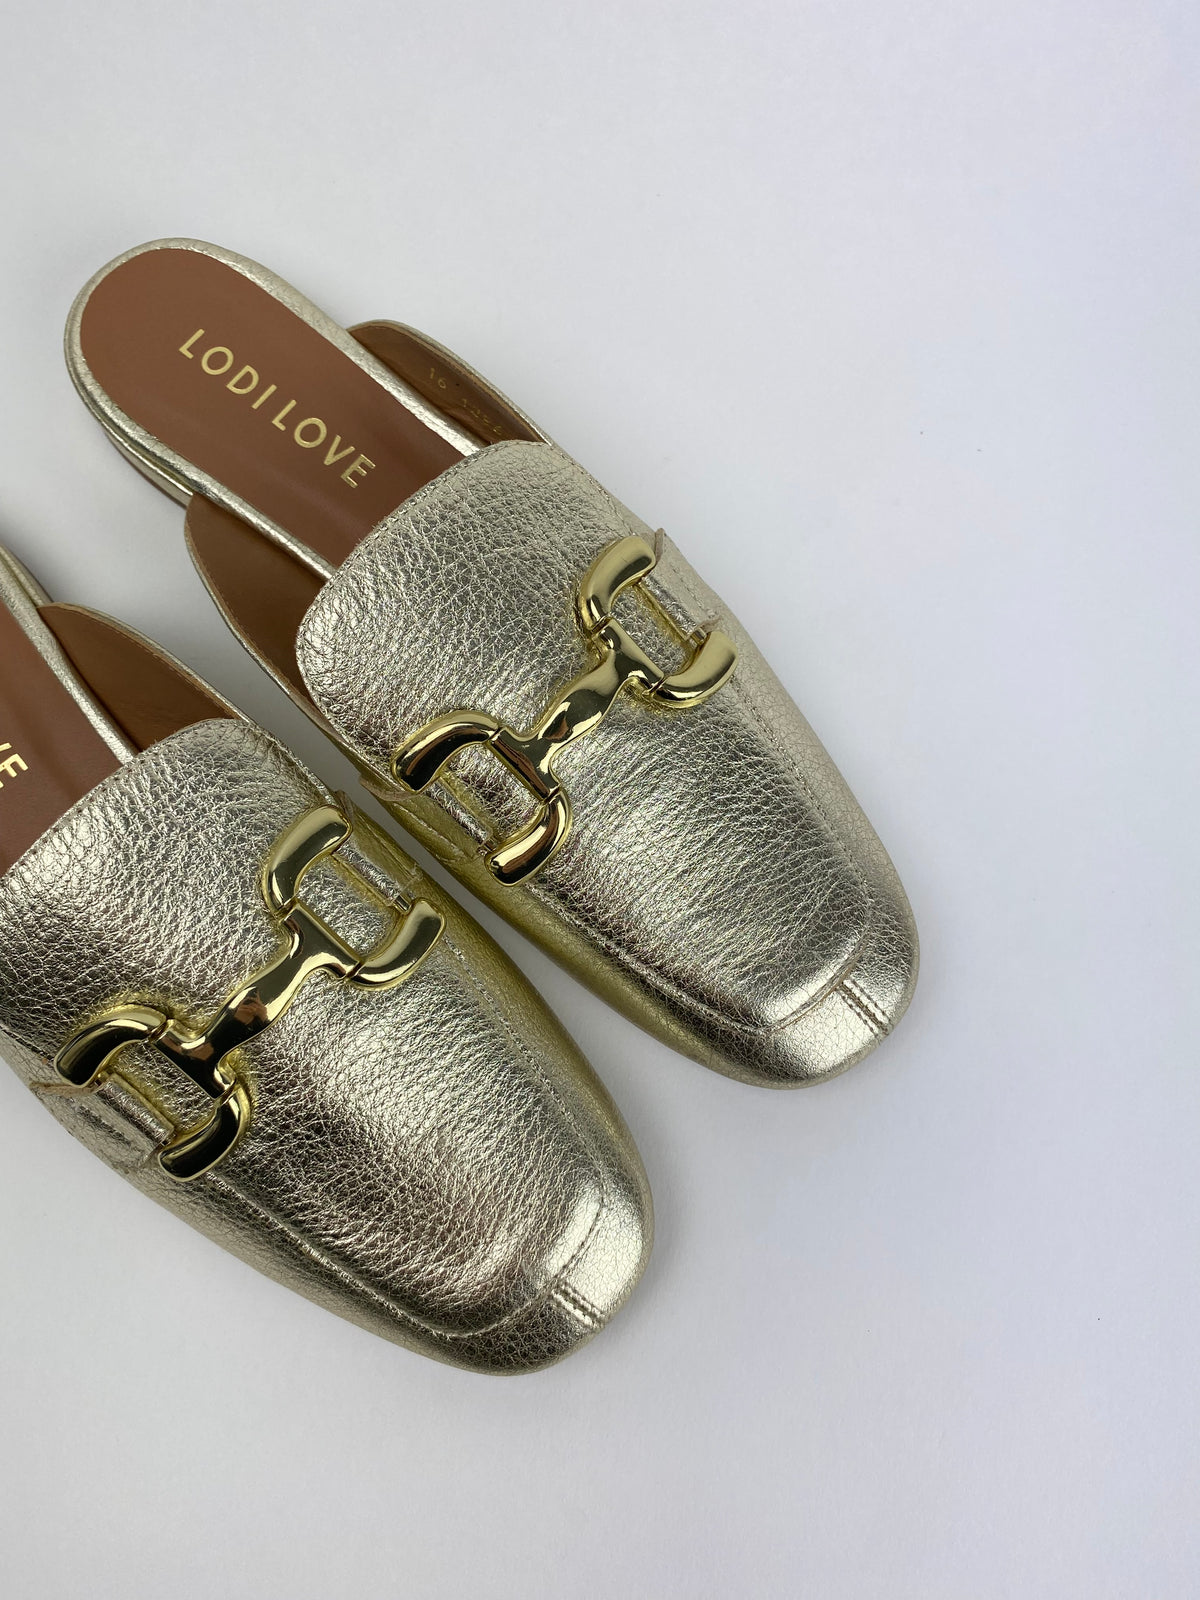 Lodi - ALA4356 Gold Leather Slide